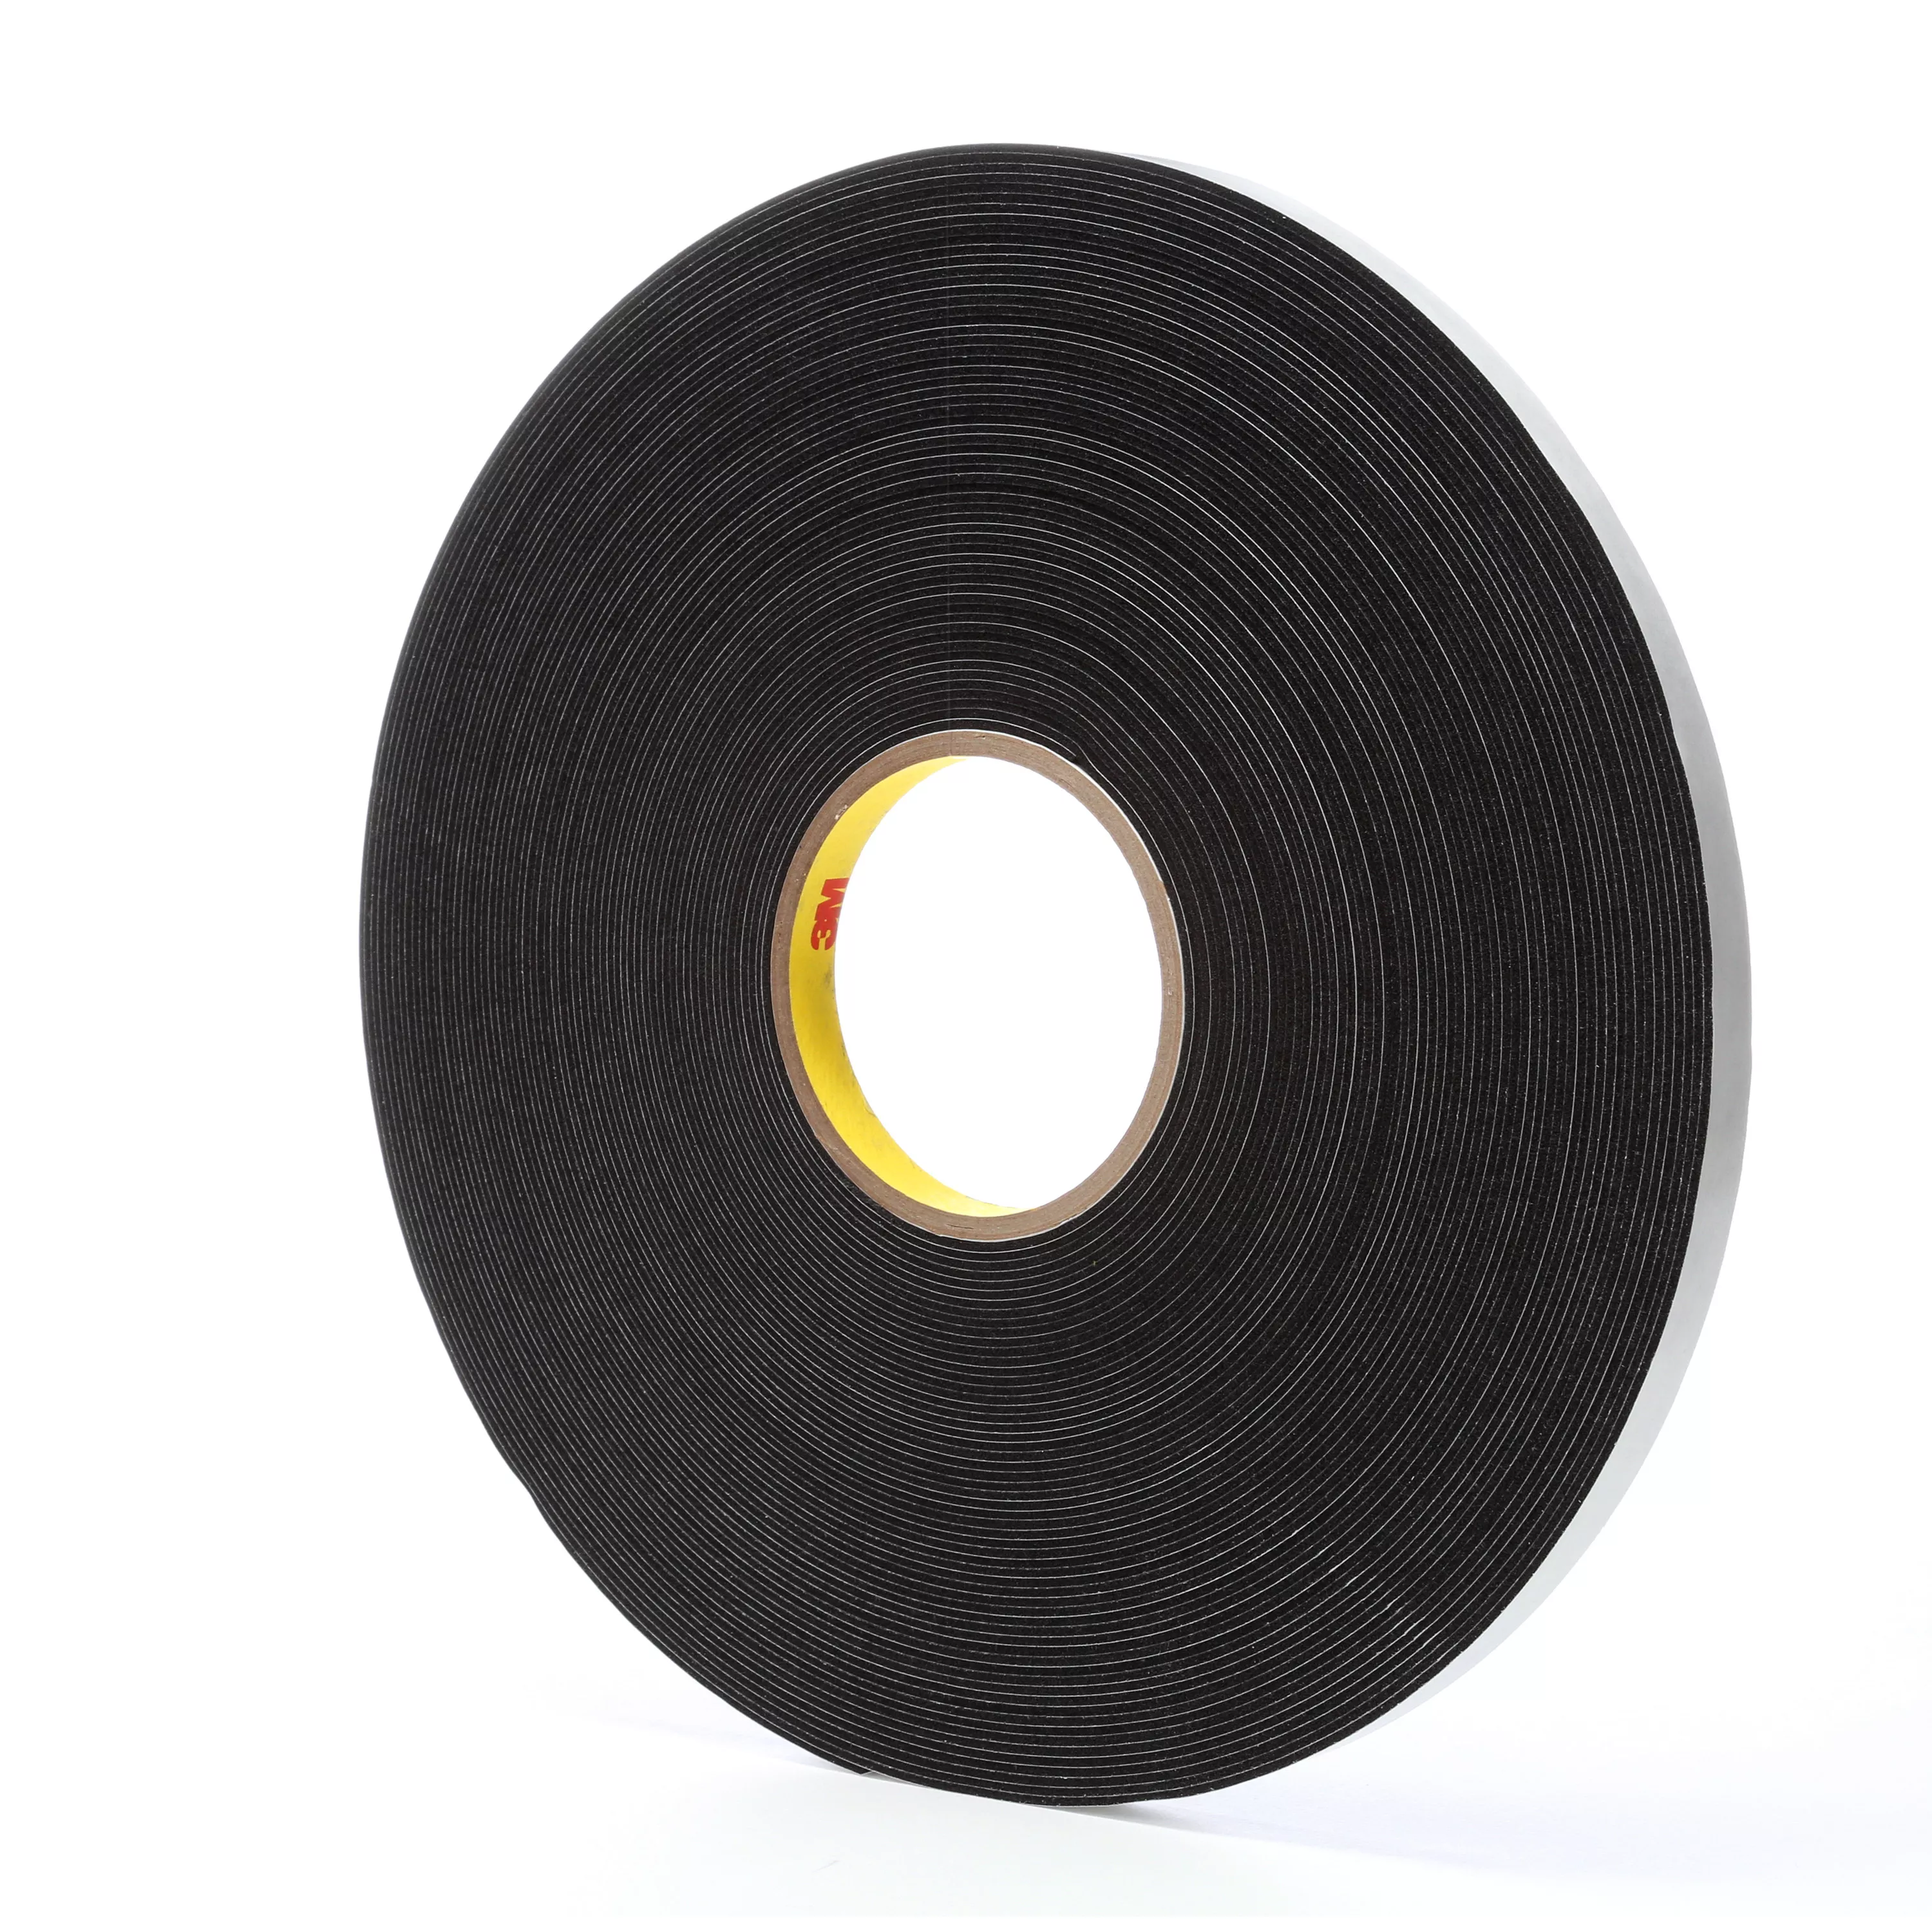 3M™ Vinyl Foam Tape 4516, Black, 1/2 in x 36 yd, 62 mil, 18 Roll/Case